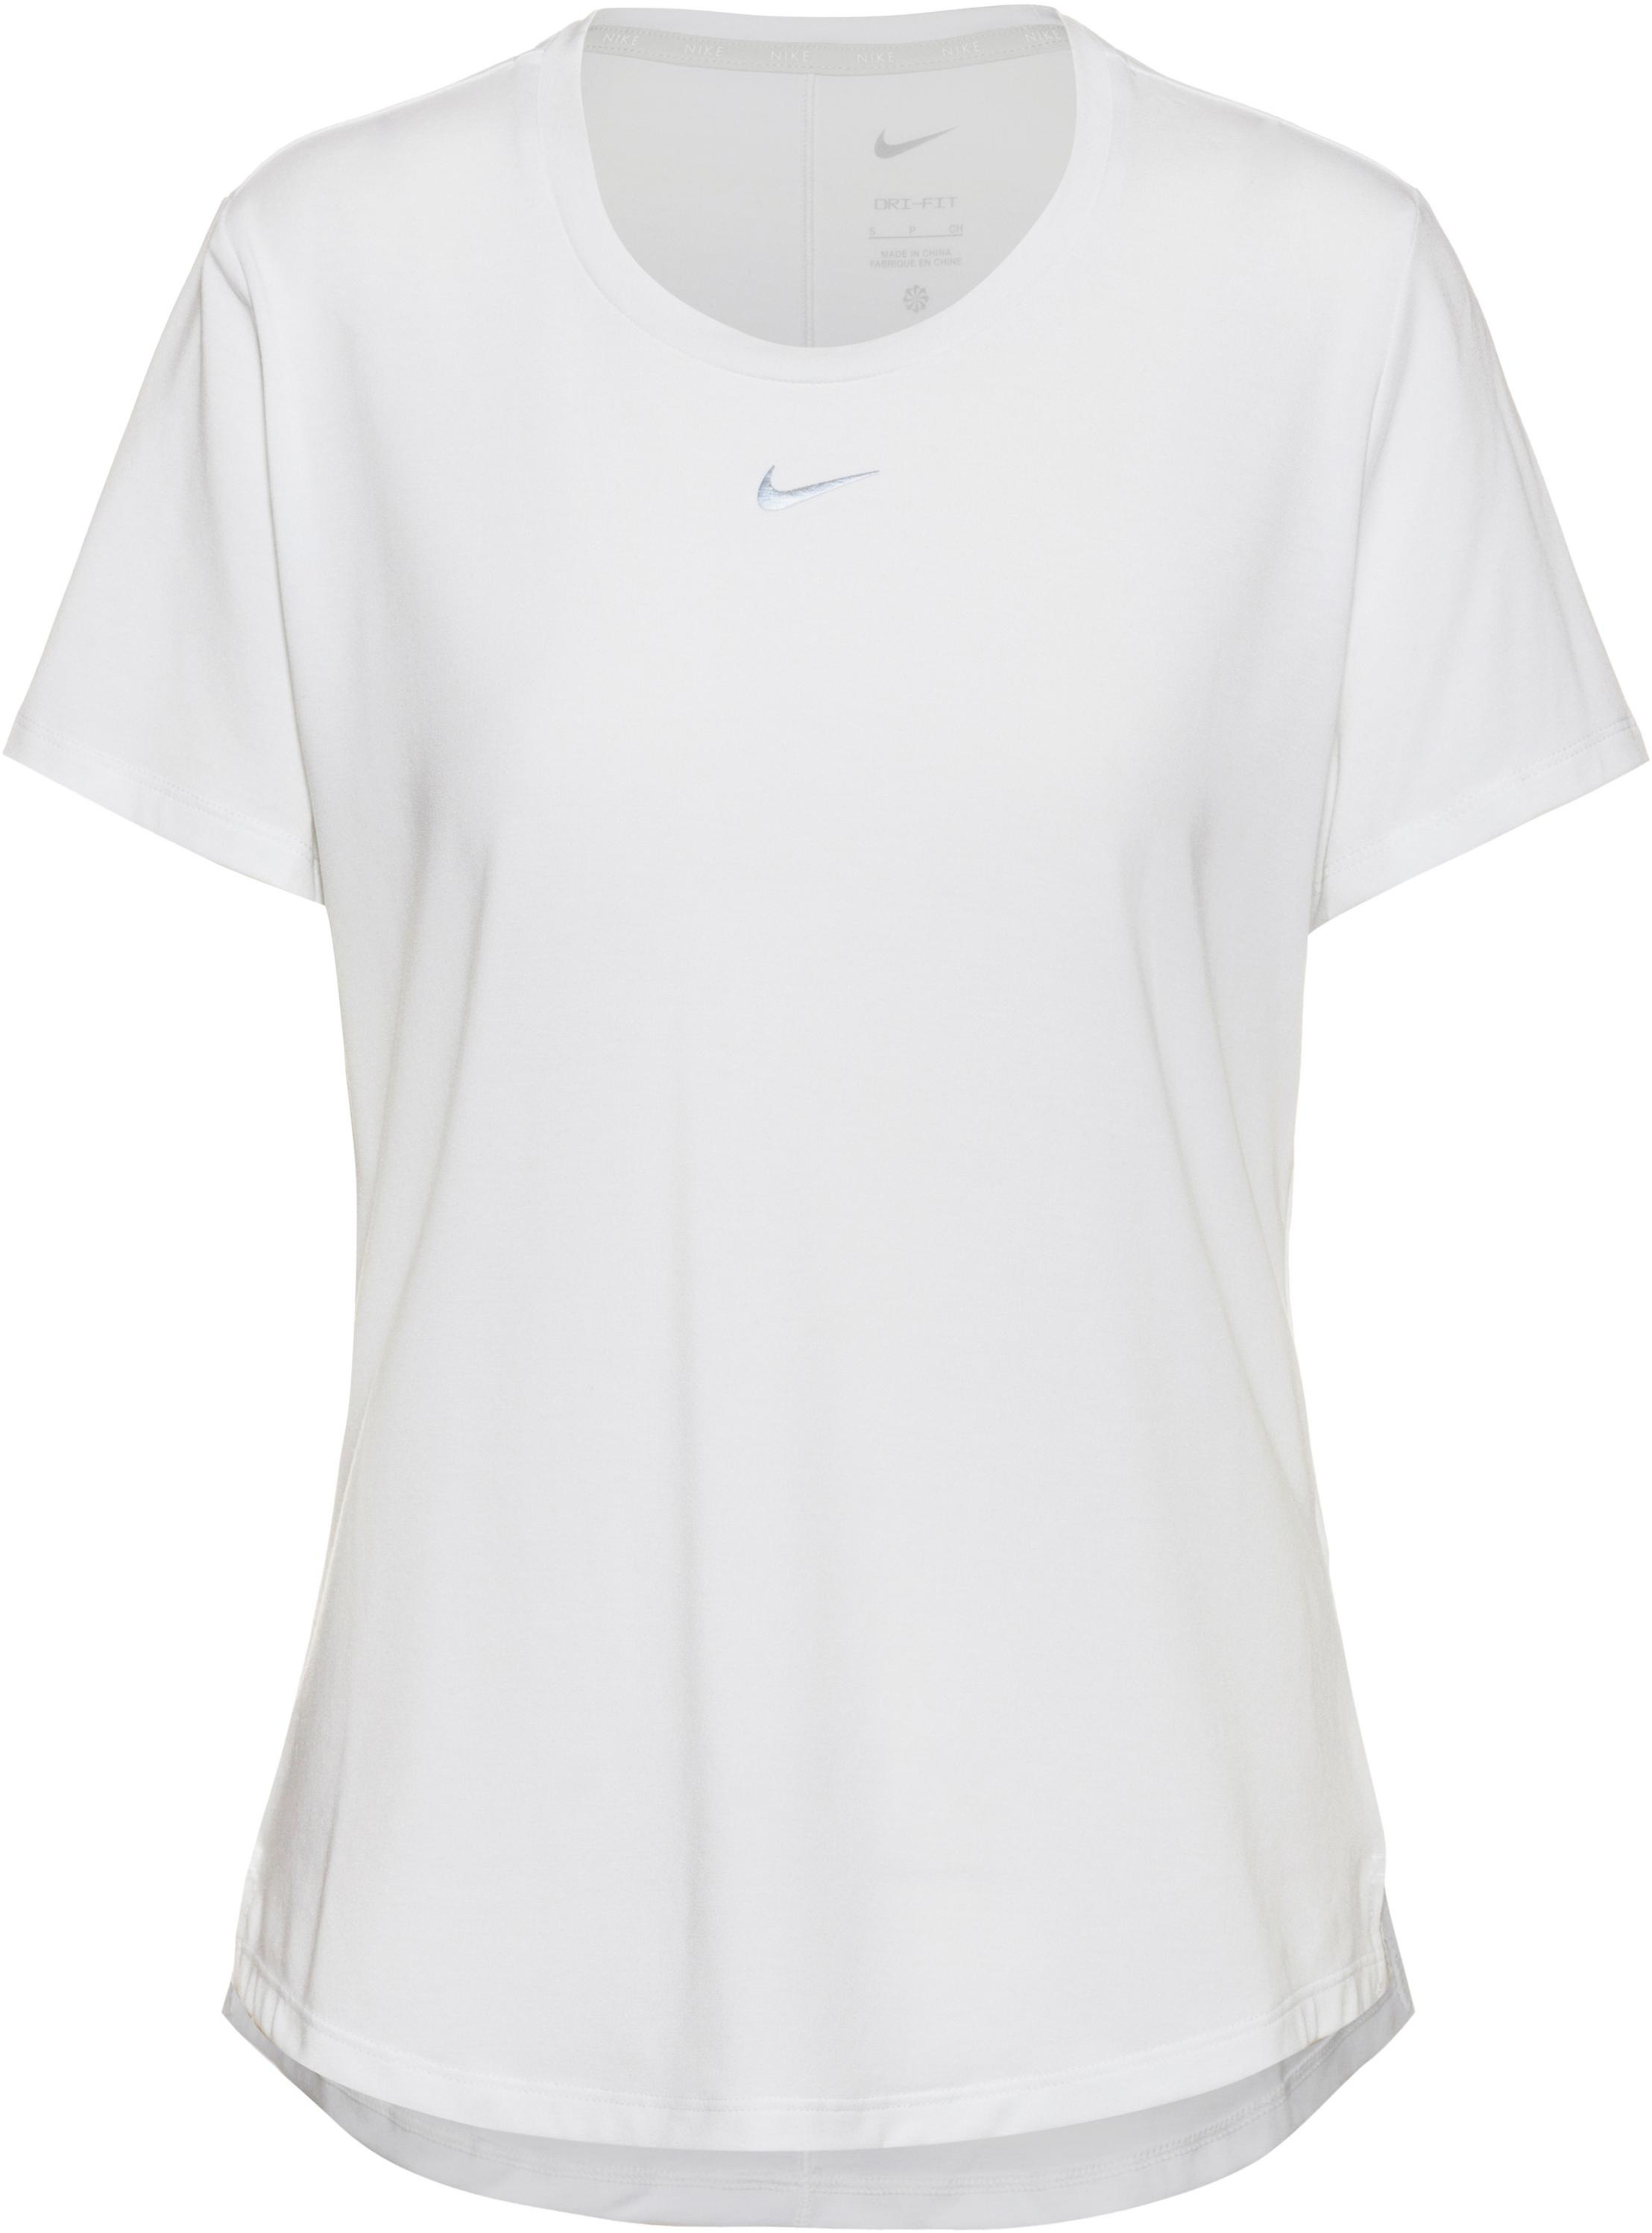 Nike Dri-FIT One Luxe Tennisshirt Damen in white-reflective silv, Größe M - weiß